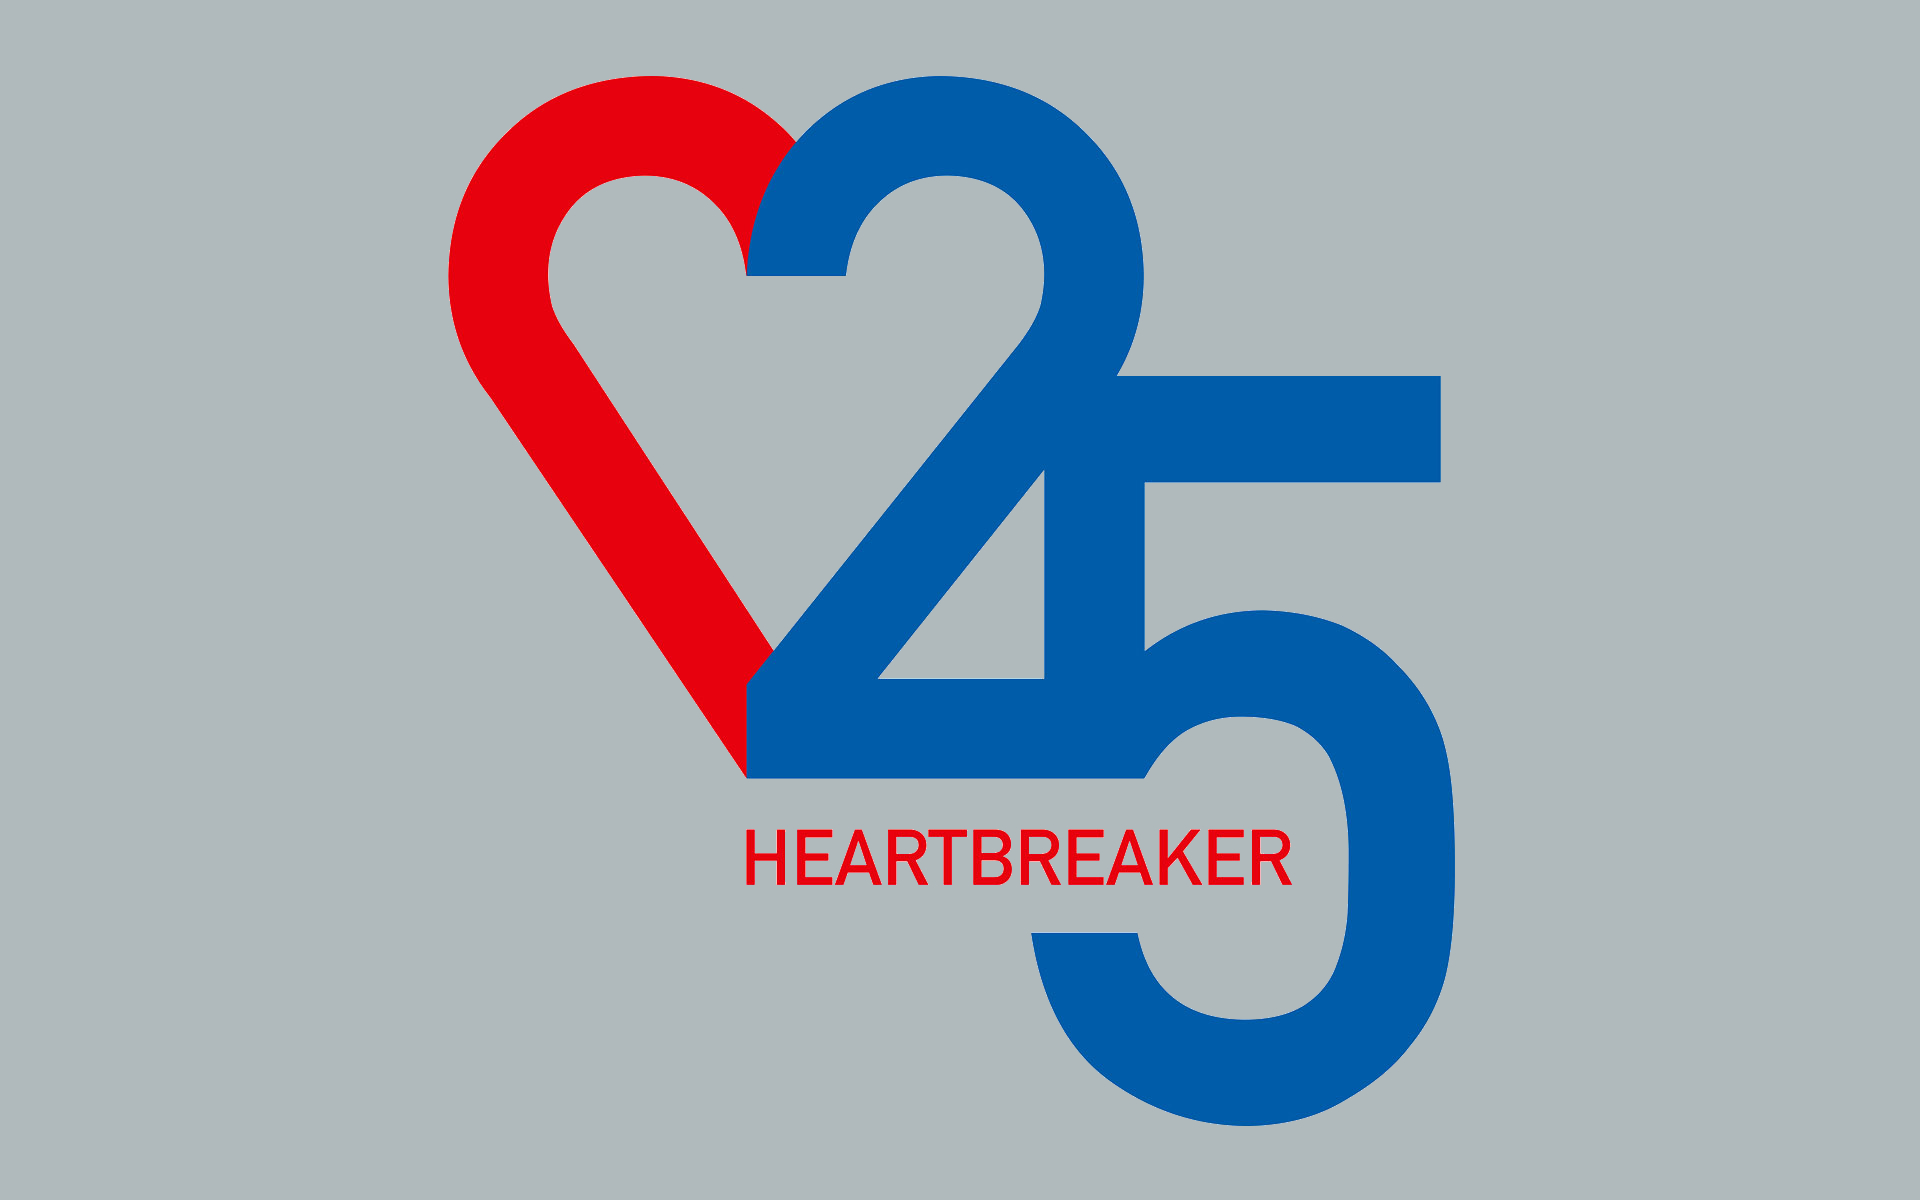 25 Jahre Heartbreaker. Illustration bestehend aus der Zahl 25 in Blau und eines roten, halben Herzens, das mit der 2 ein ganzes Herz bildet.